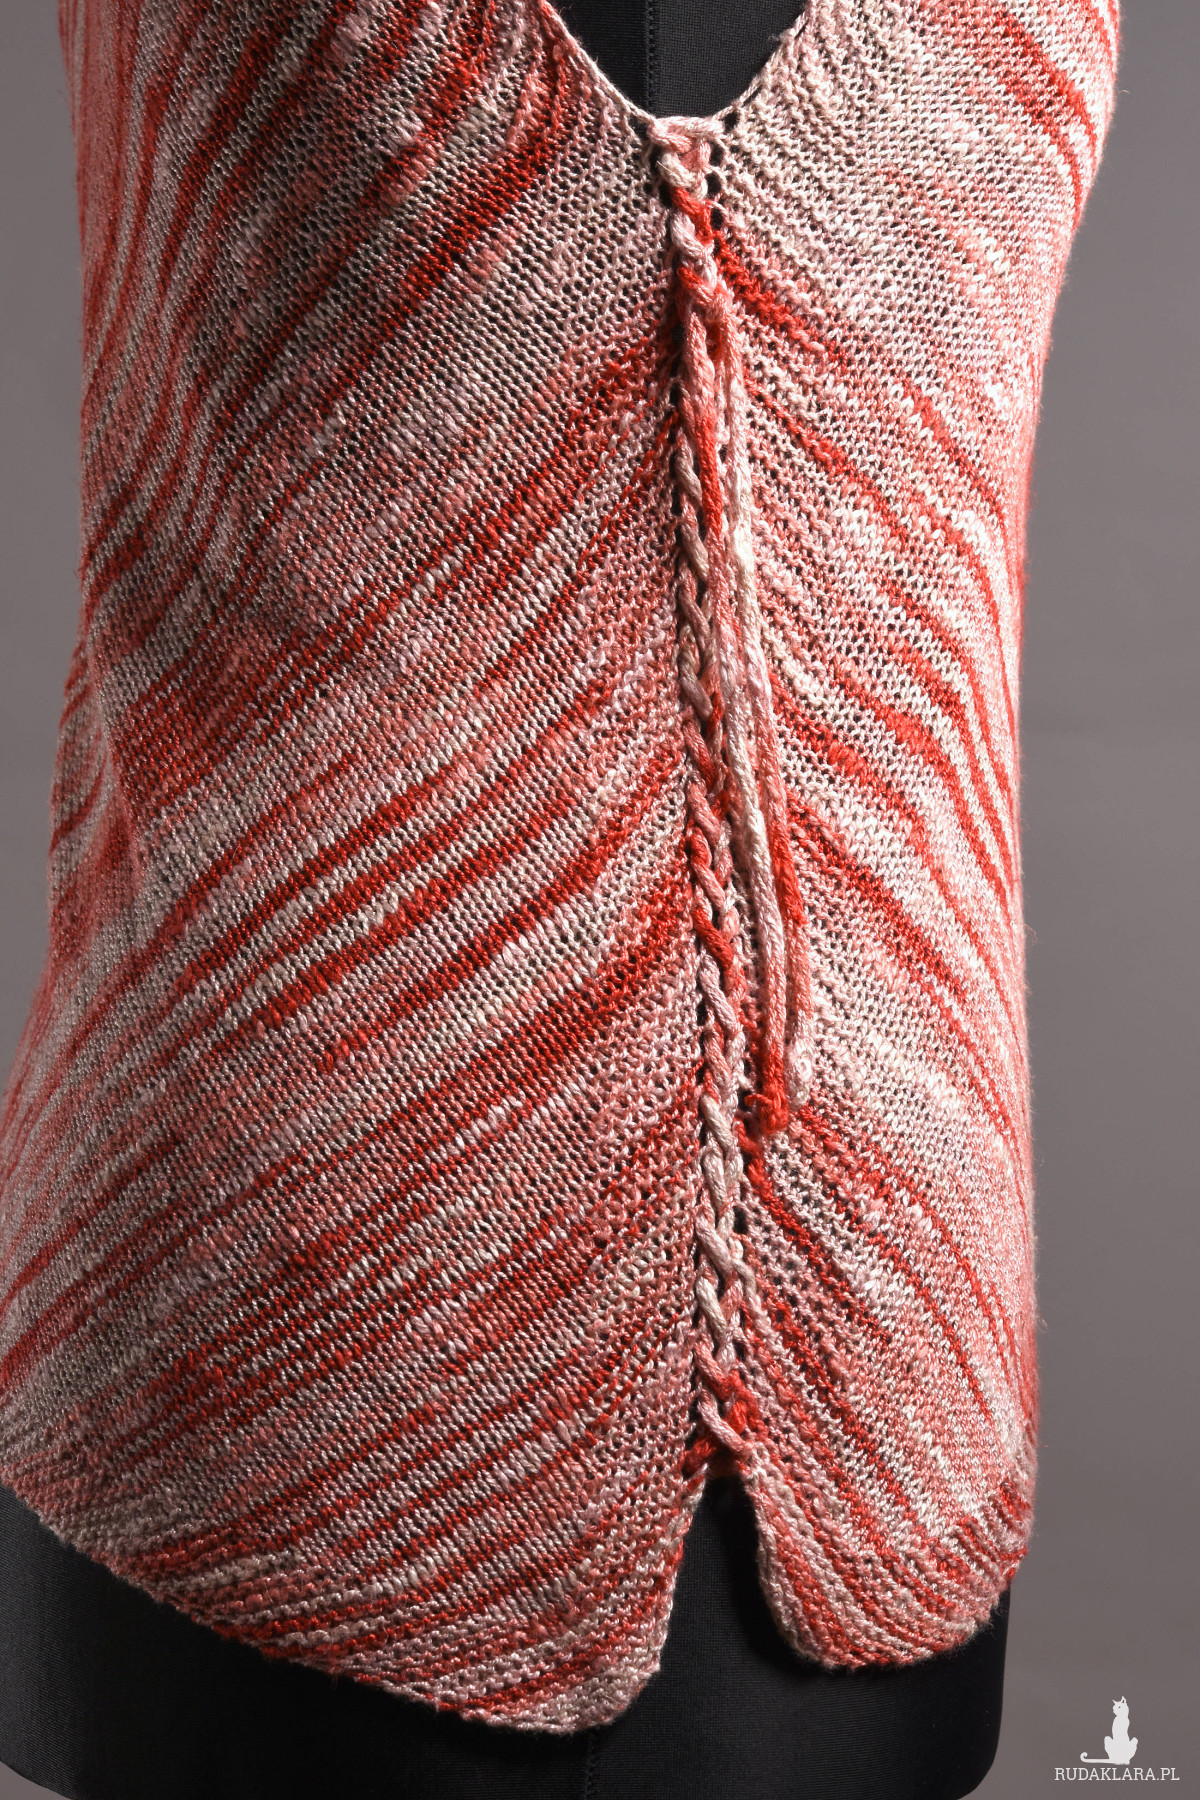 Trójkąty-damski top asymetryczny#zrobiony ręcznie#zrobiony na drutach#top na lato# melanż czerwieni i bieli#len i wiskoza